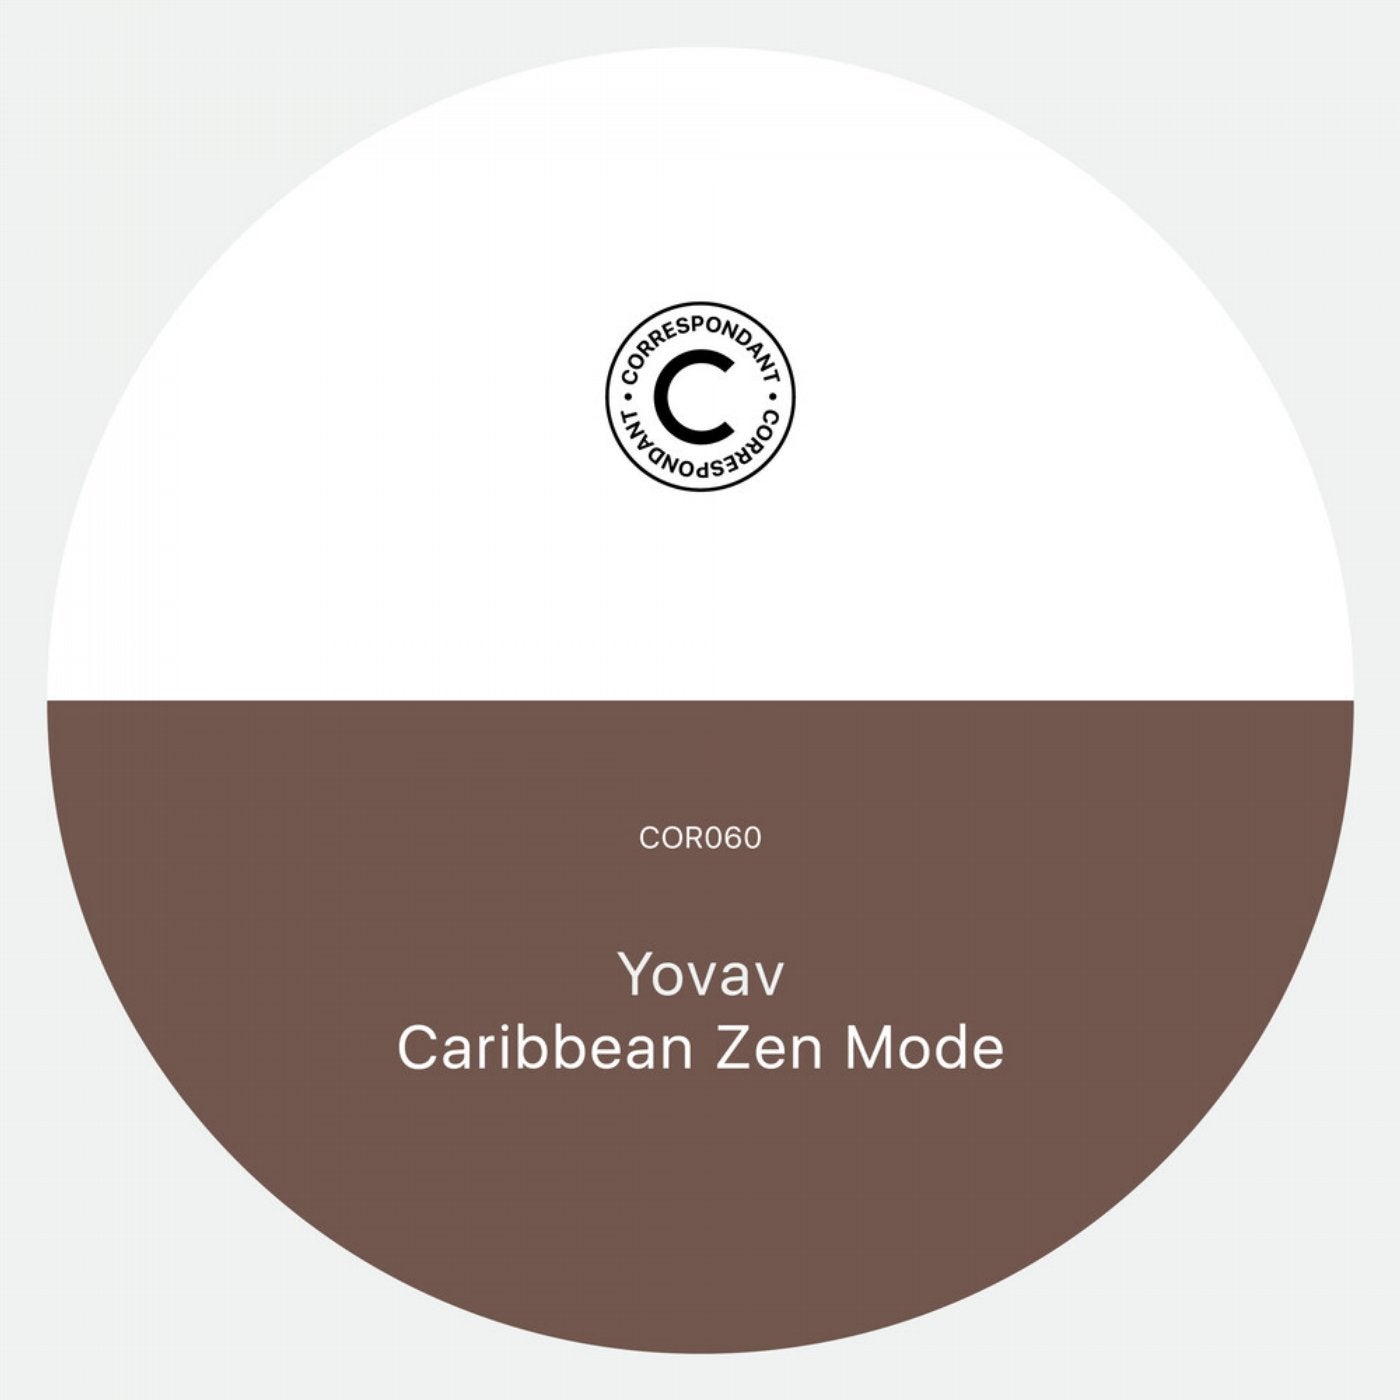 Caribbean Zen Mode